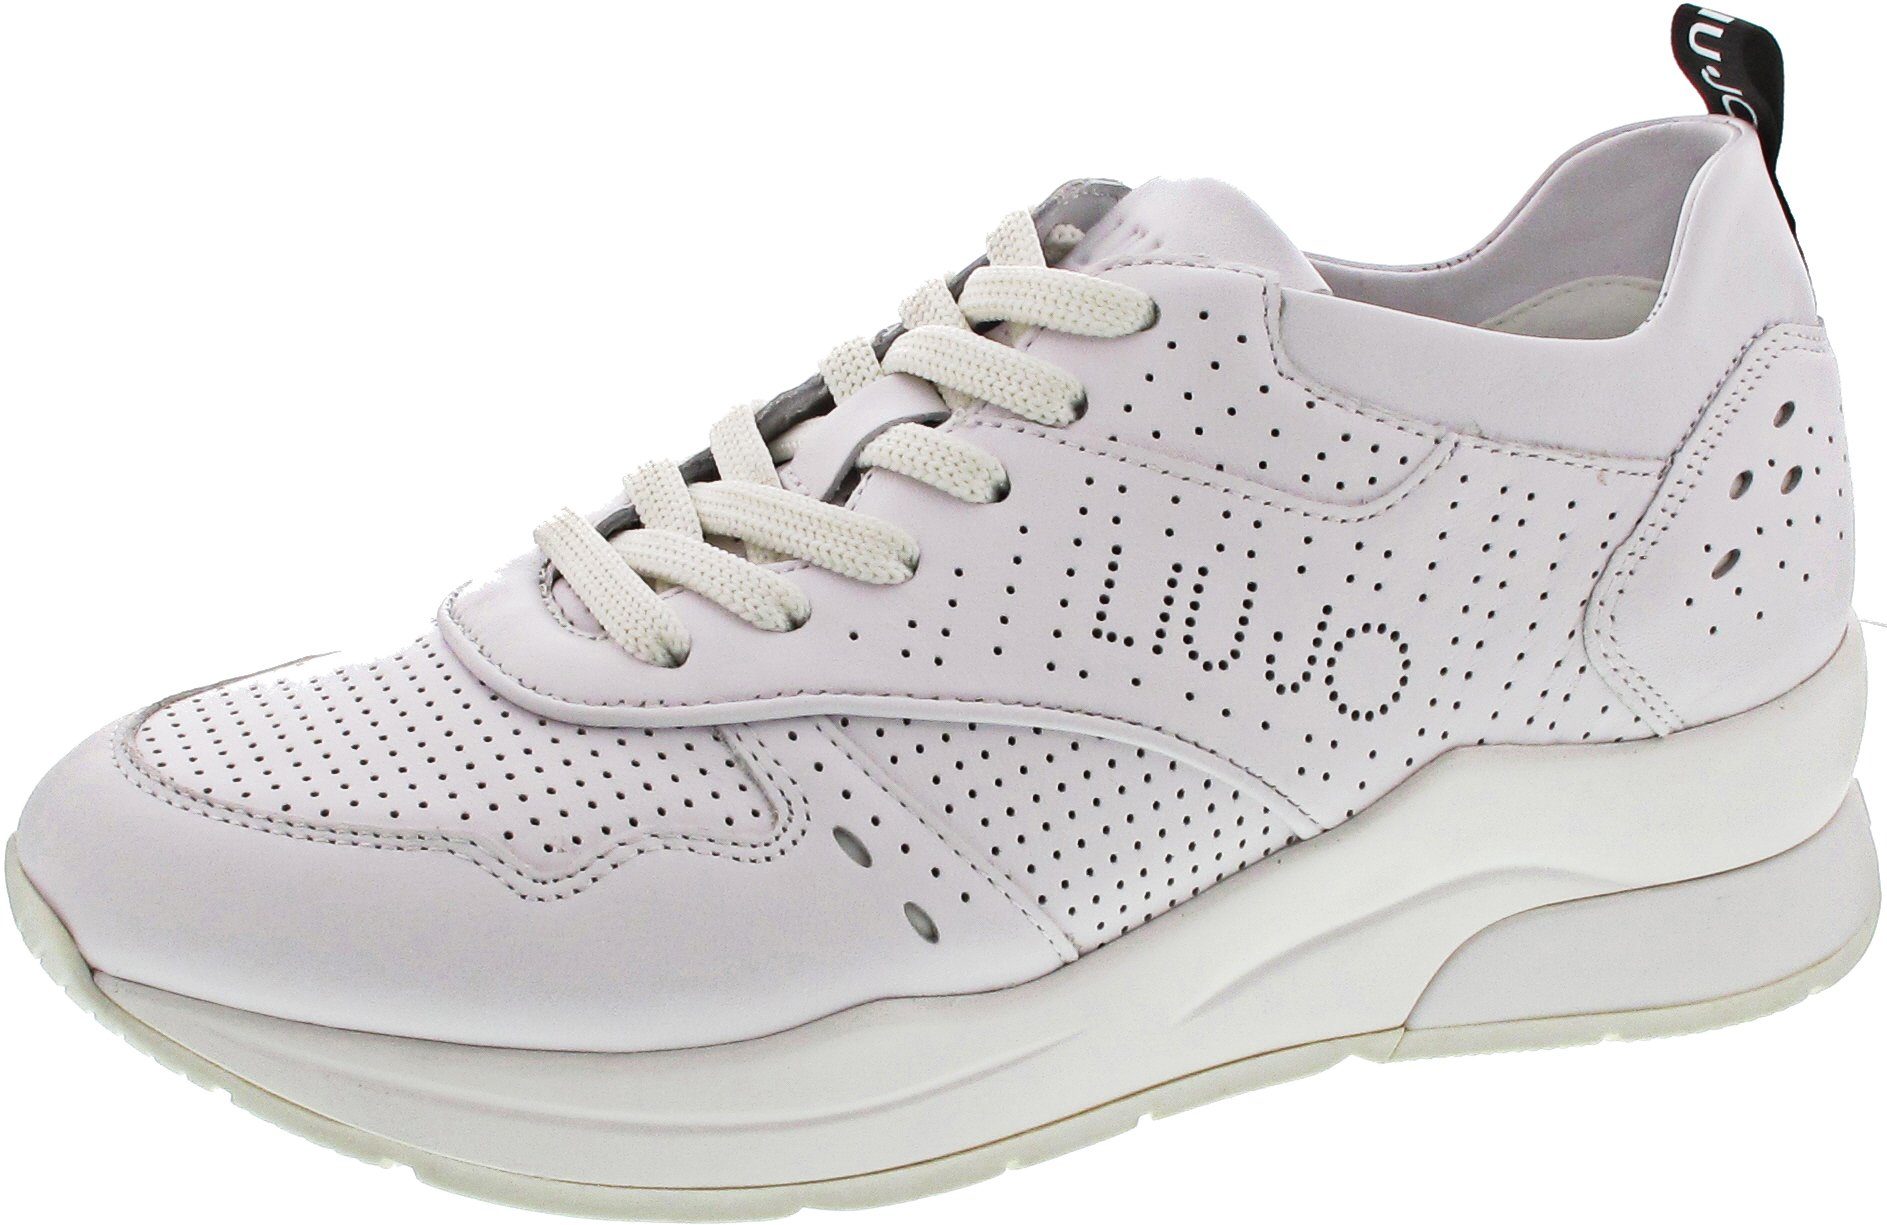 Liu Jo Karlie 14 Sneaker, weiß online kaufen | OTTO